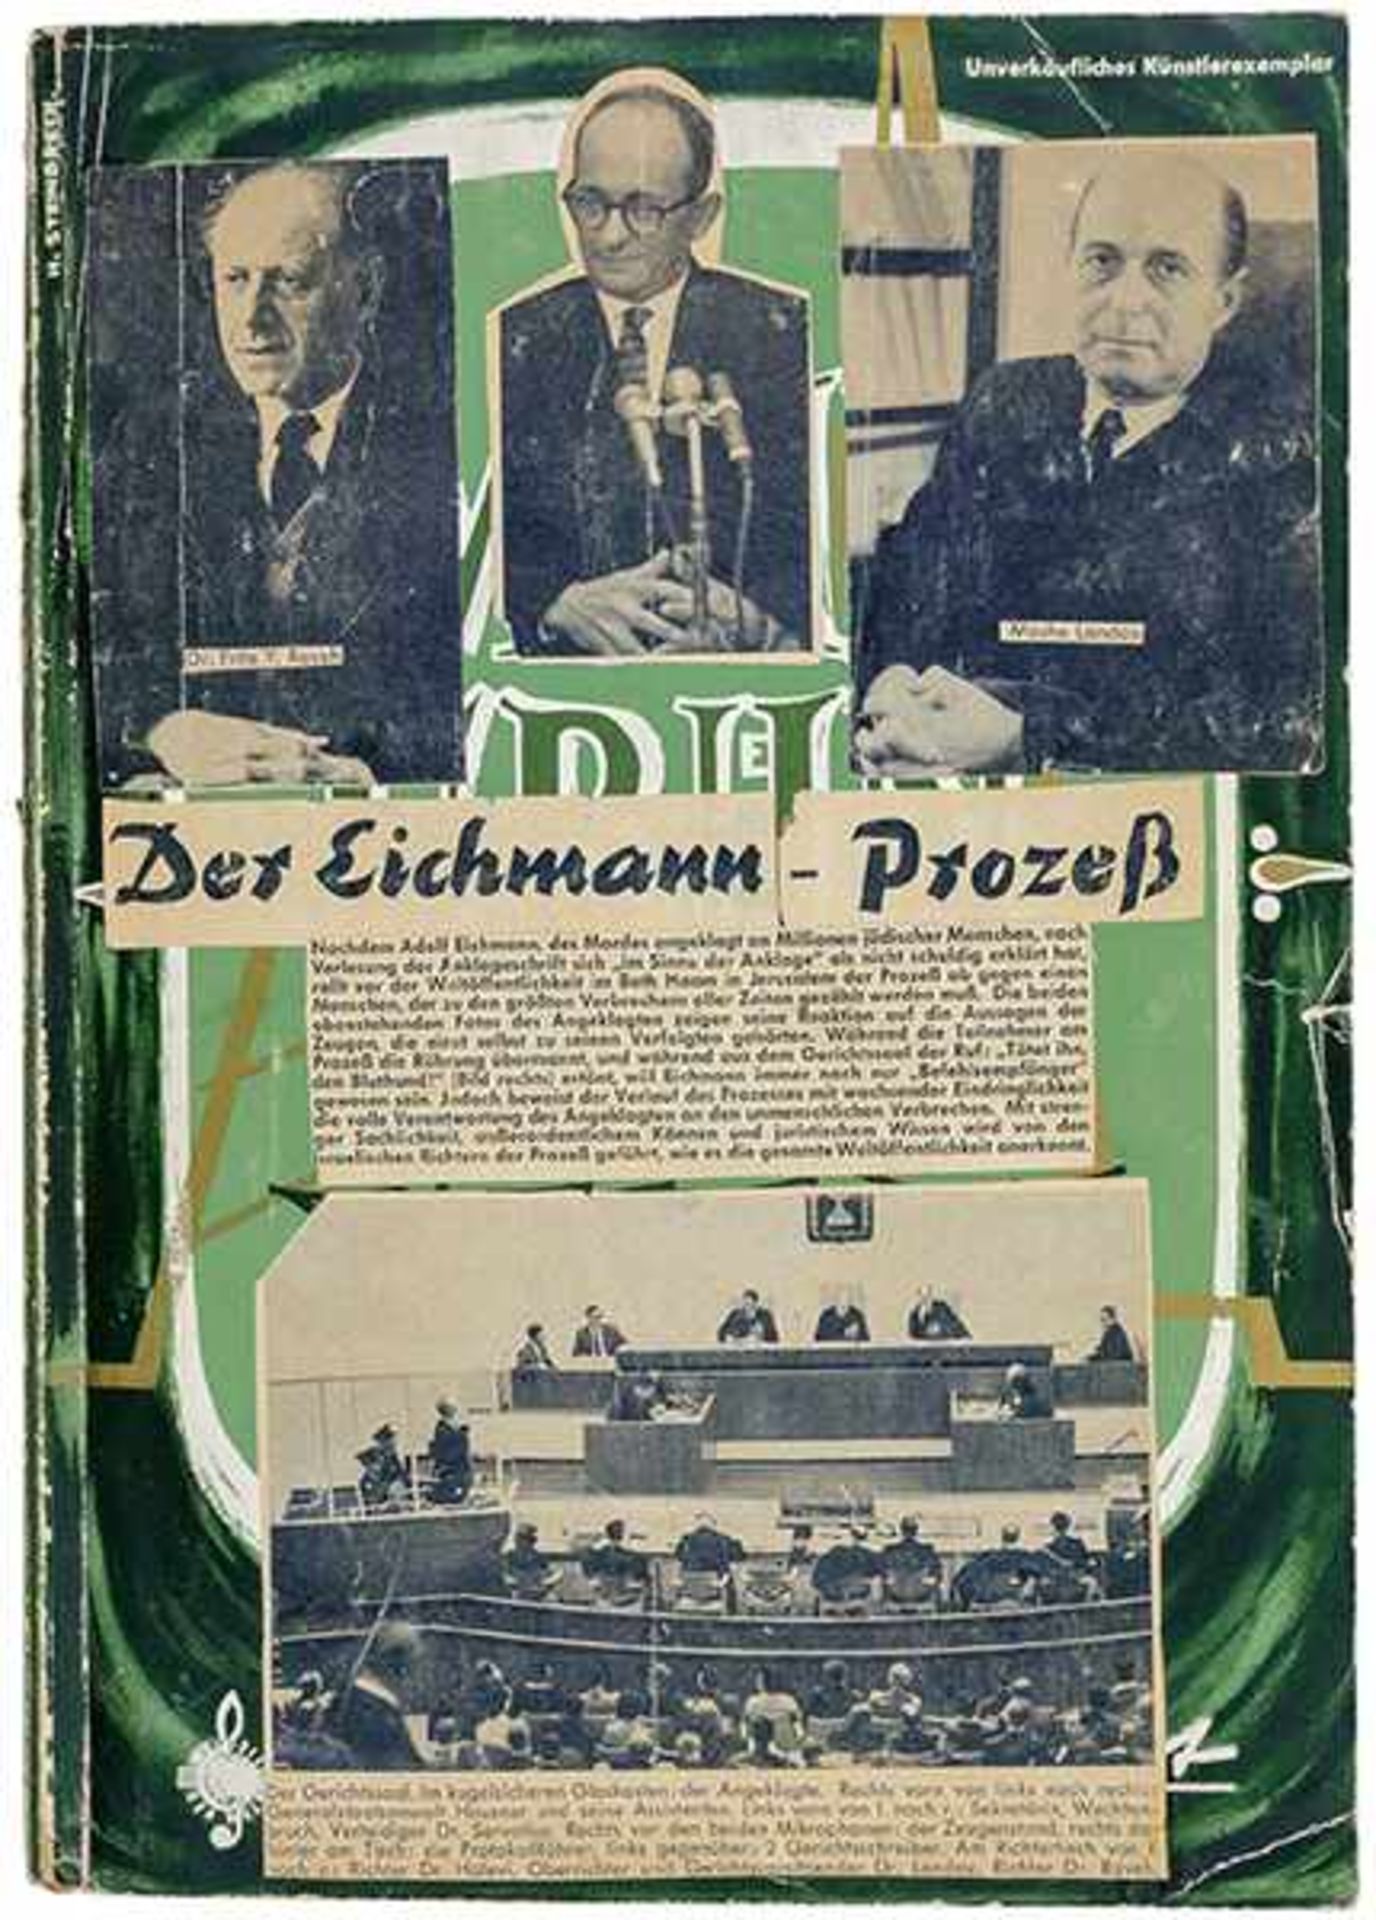 Nationalsozialismus - - Materialsammlung zum Eichmann-Prozeß von H.D, Heilmann. Mit zahlreichen